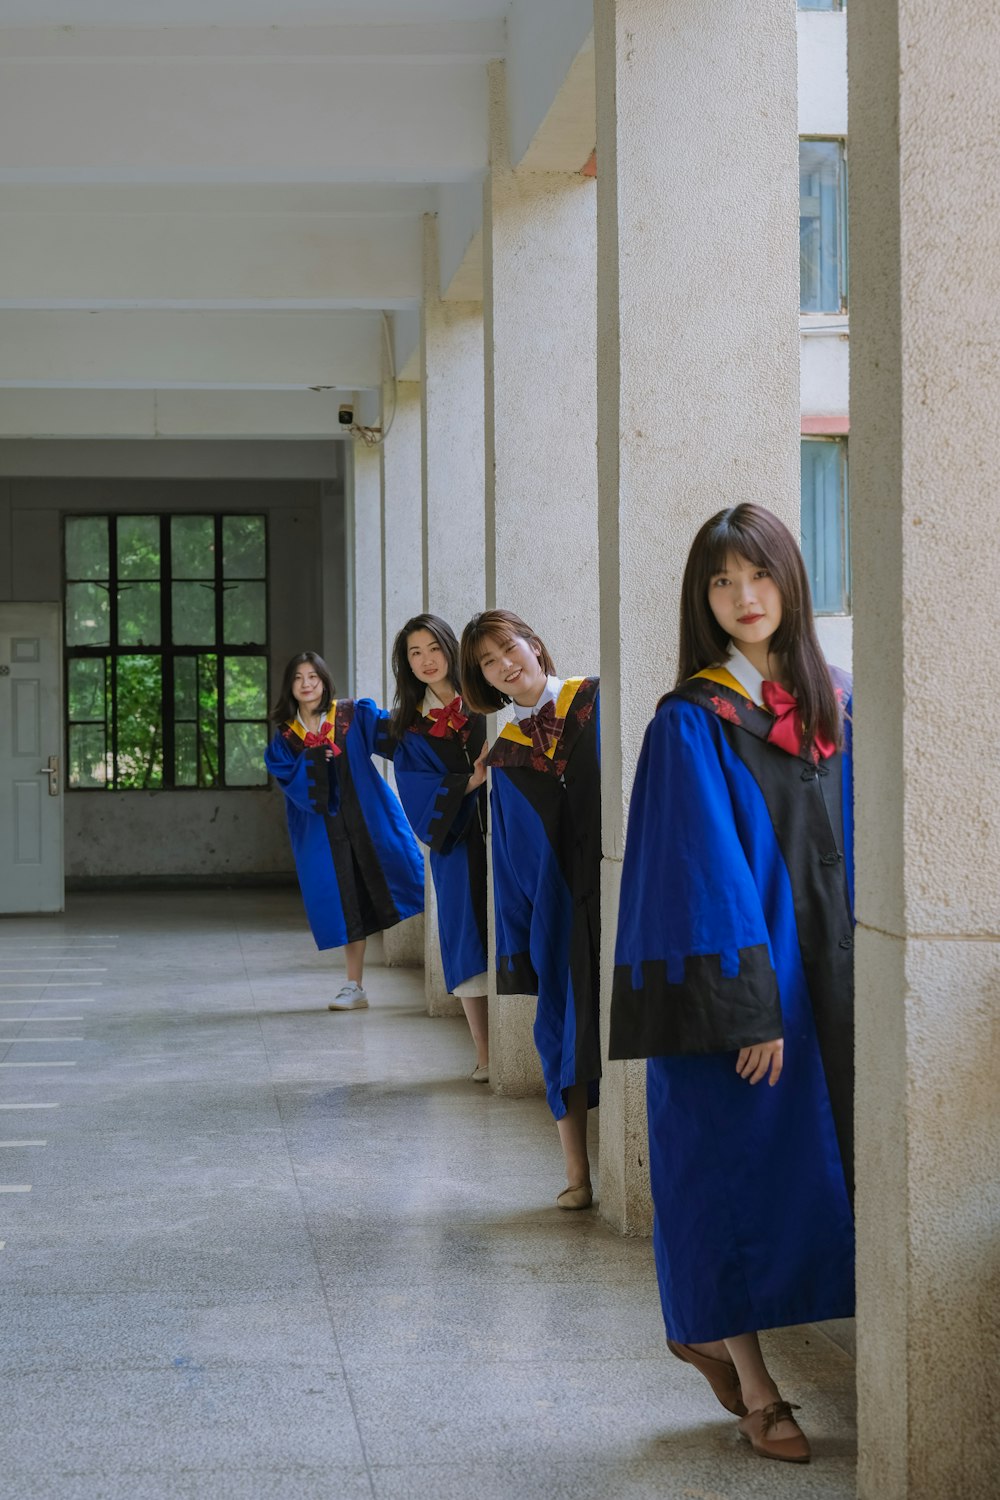 Eine Gruppe Mädchen in blauen Roben stehen in einem Flur